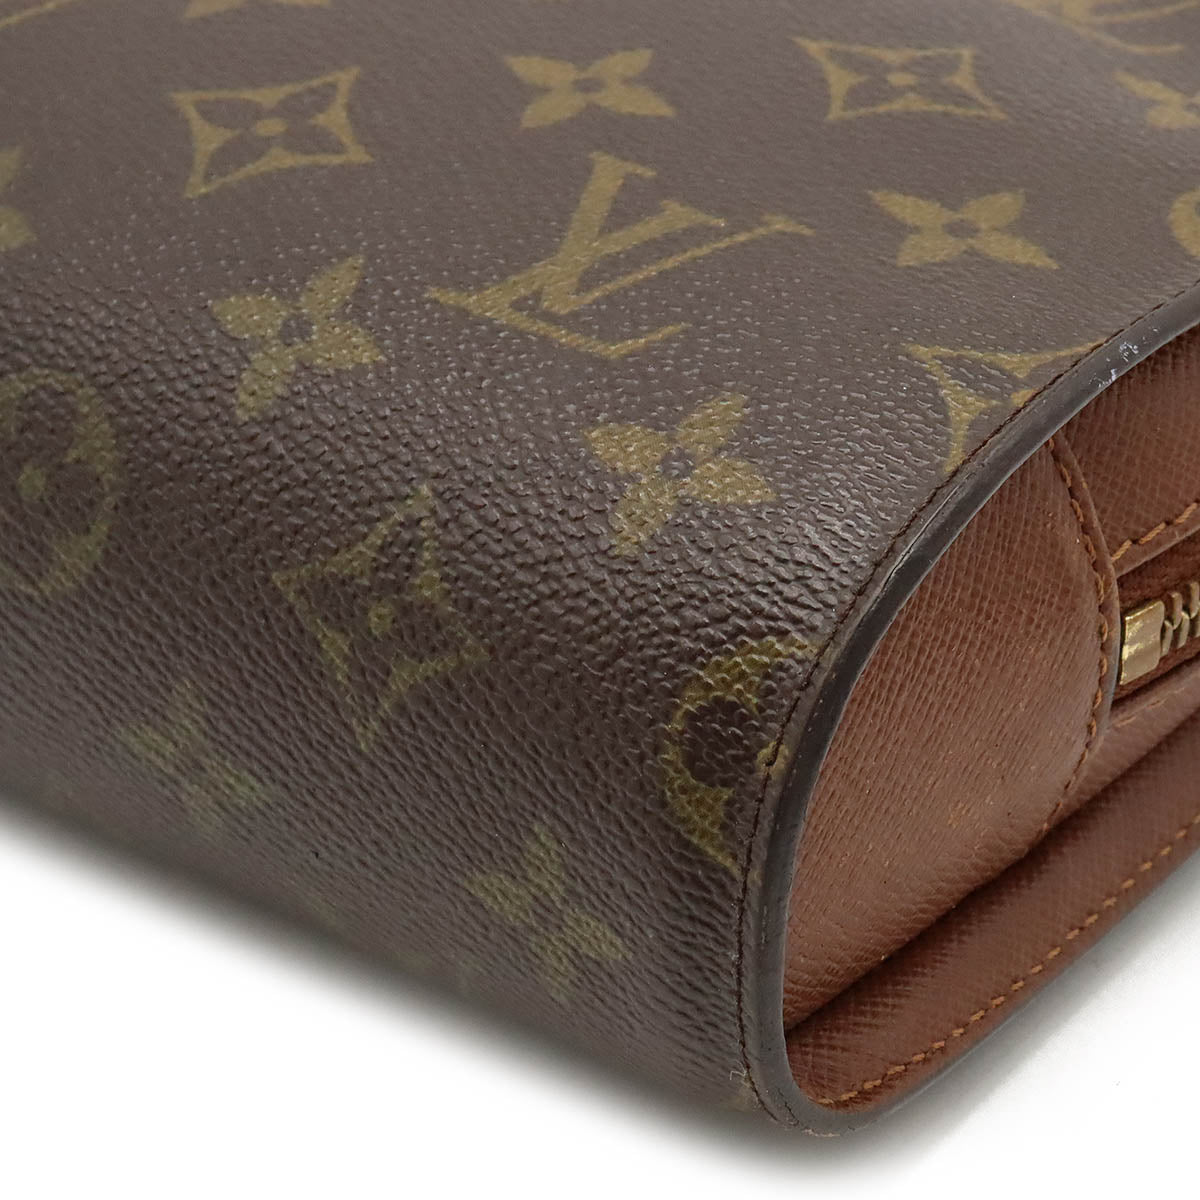 Louis Vuitton Louis Vuitton Monogram Orsay Second Bag Cratch Bag Men's Handbag M51790